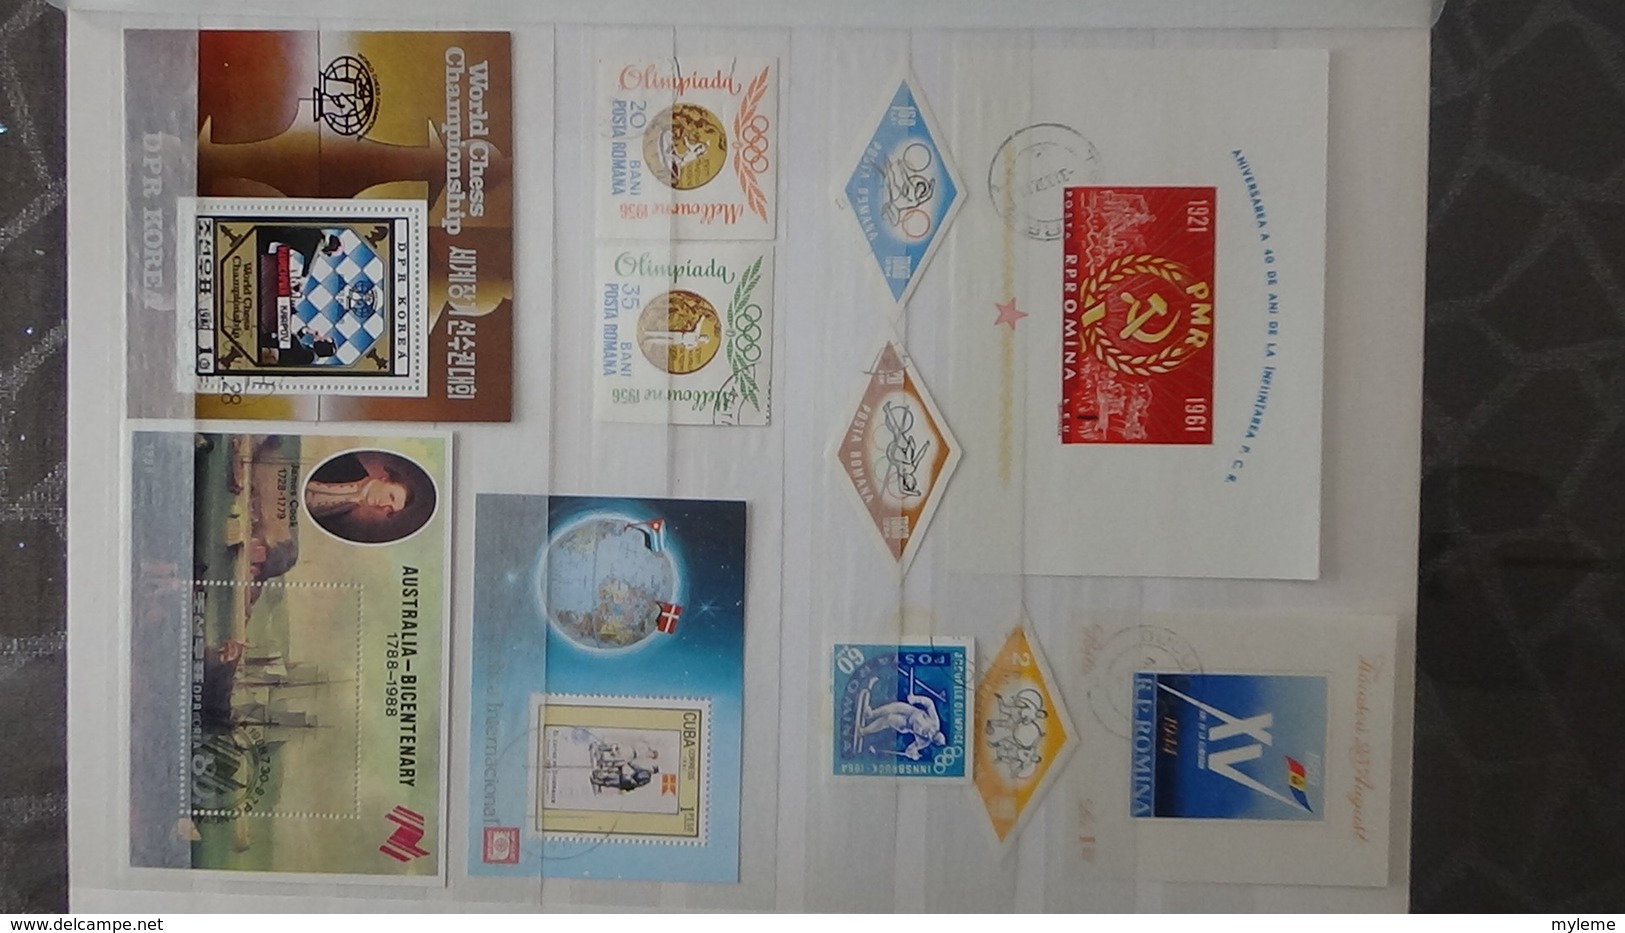 146 blocs et plusieurs timbres oblitérés de différents pays dont France 1/2 bloc Philatec 64 **. Voir commentaires !!!